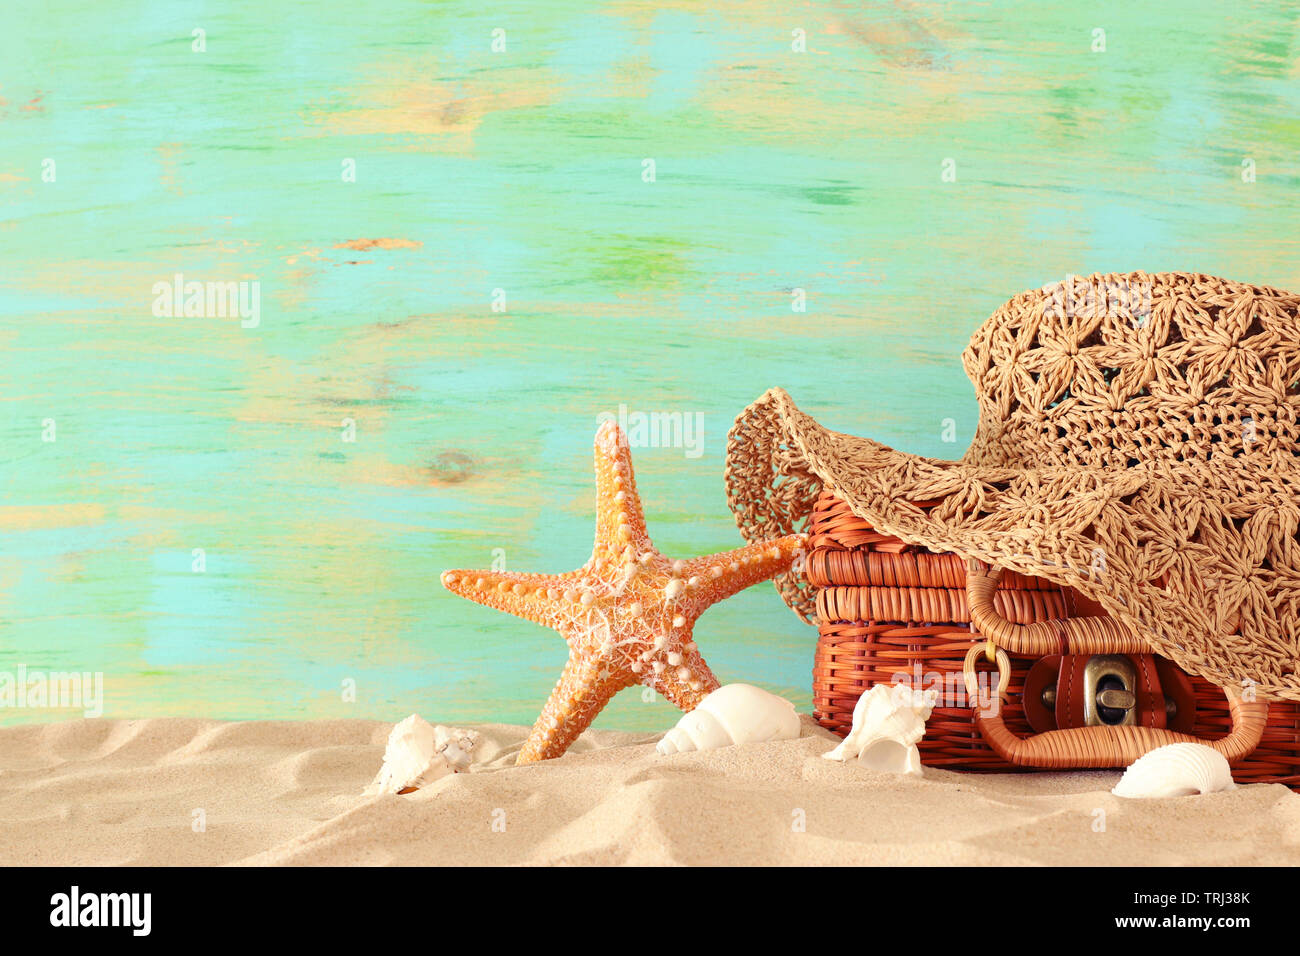 Strand Mode Frauen hat über Stroh Koffer im Sand. Tropischer Sommer Urlaub Konzept Stockfoto